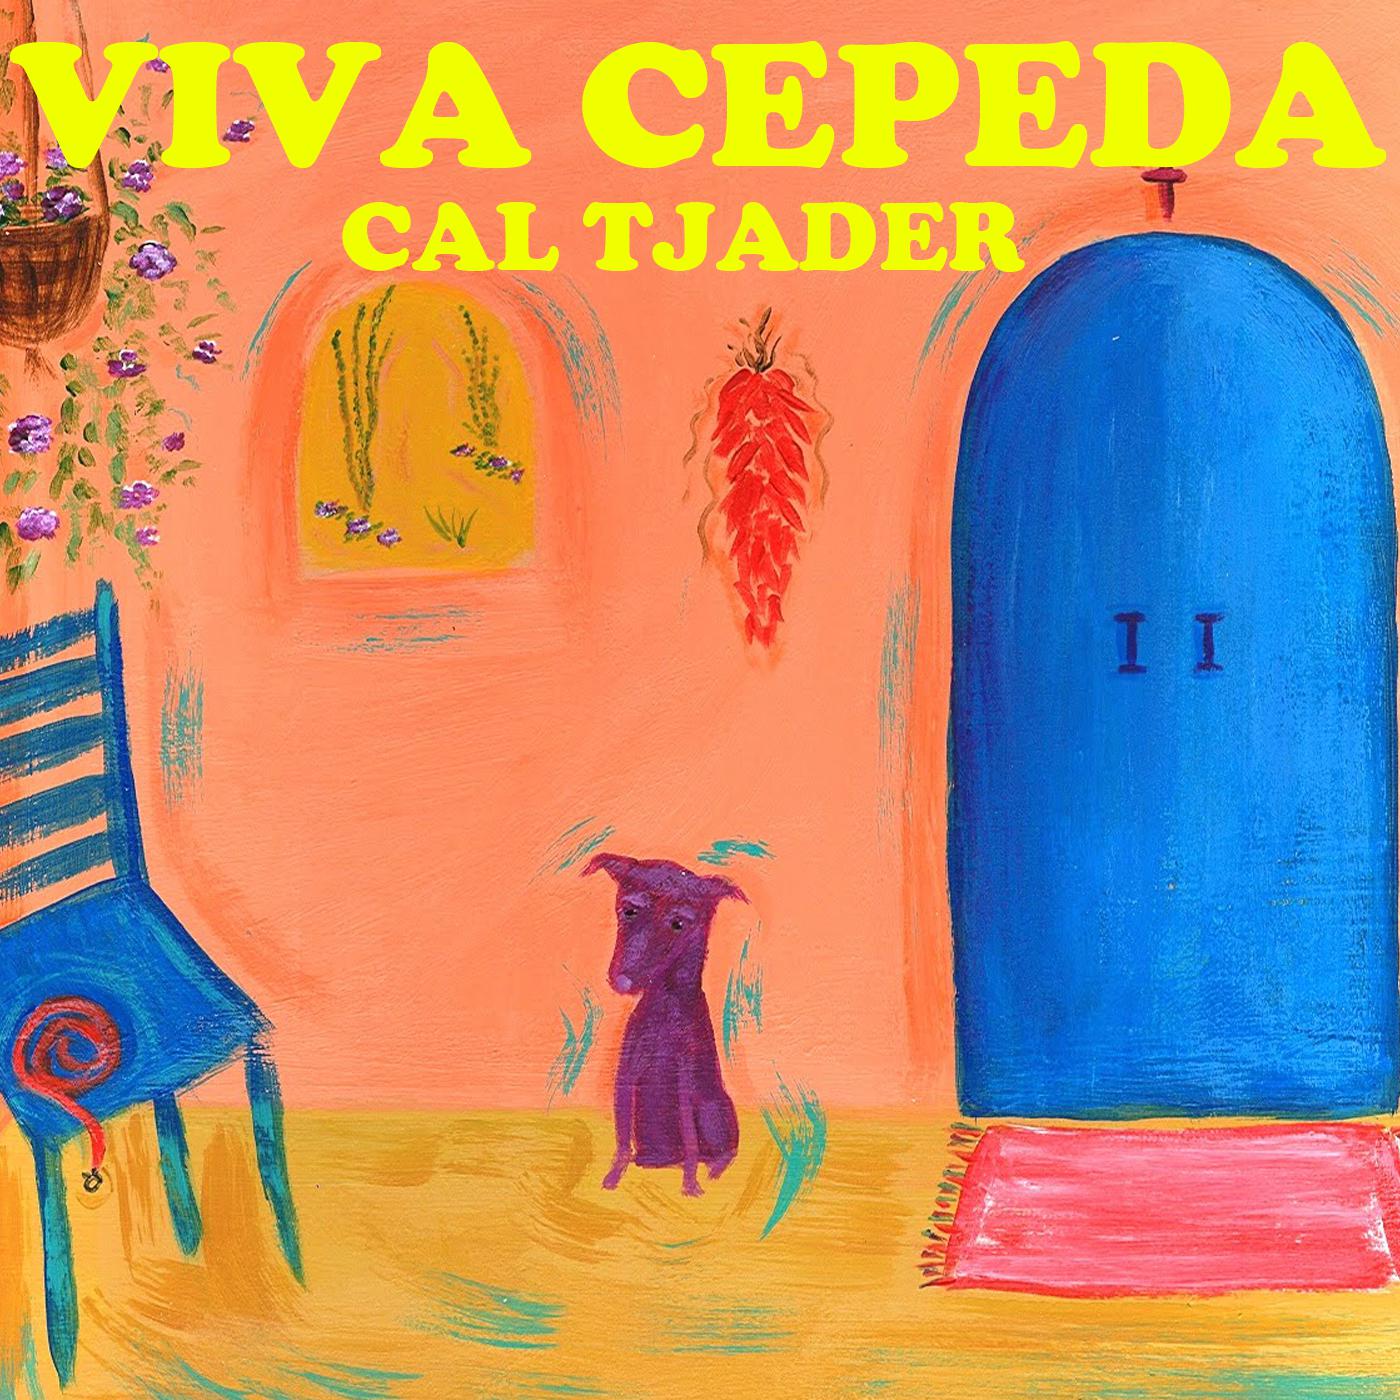 Viva Cepeda